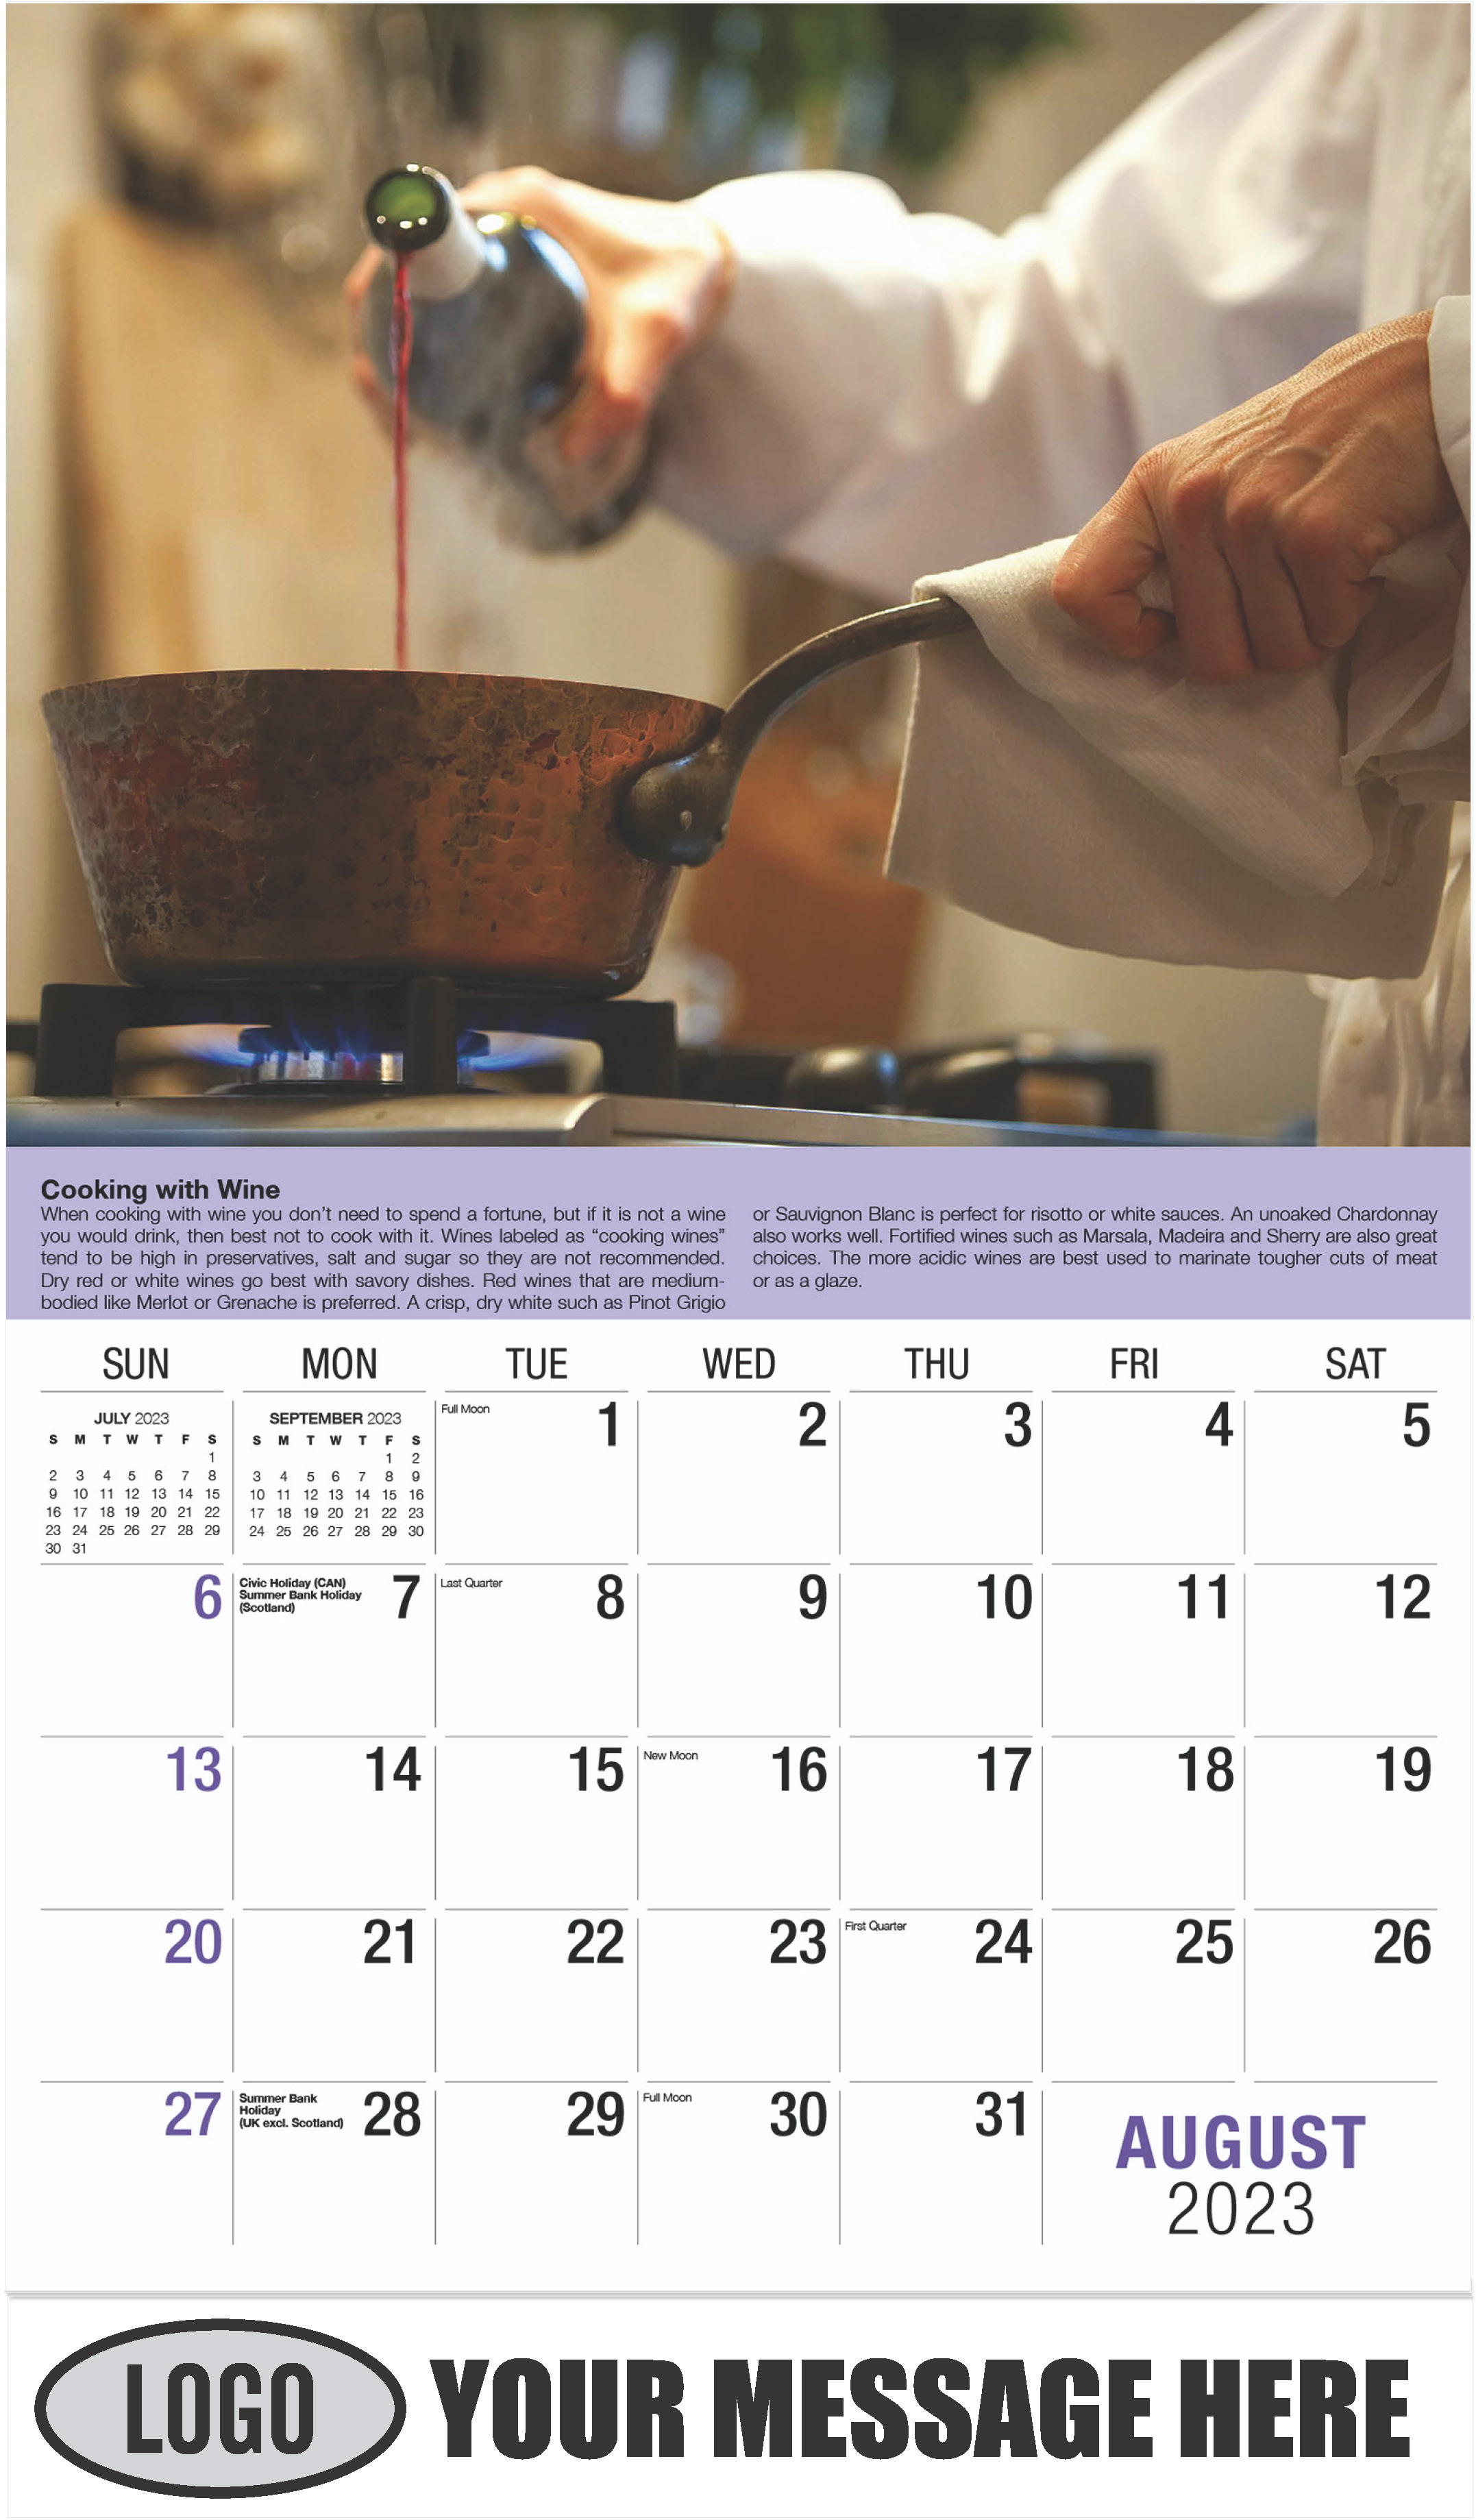 Wine Tips Calendar - August - Vintages 2023 Promotional Calendar